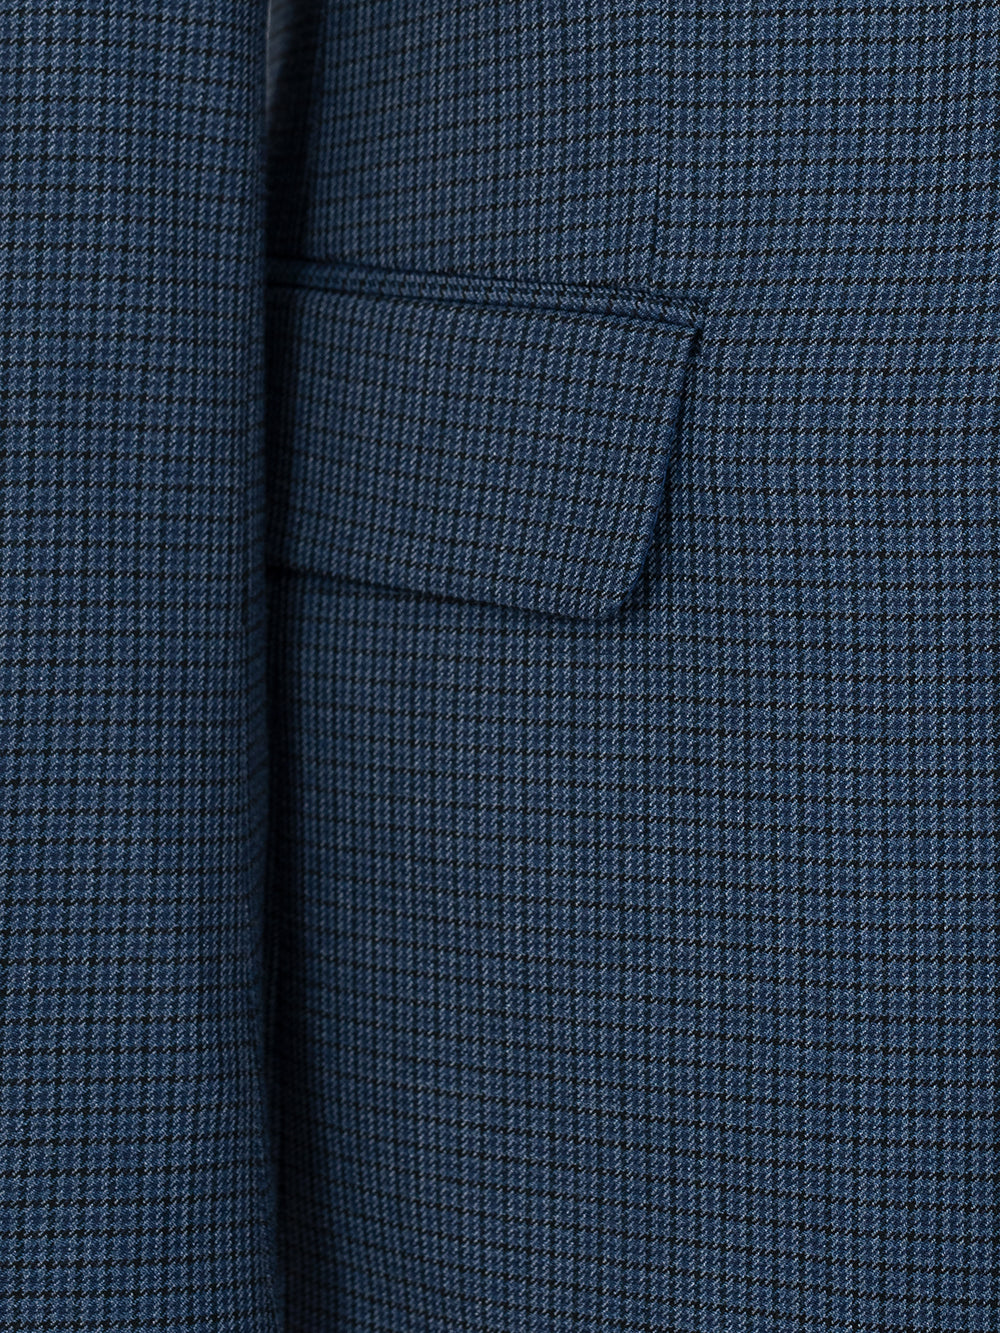 Bobby Blue Set Blazer Linen Suit